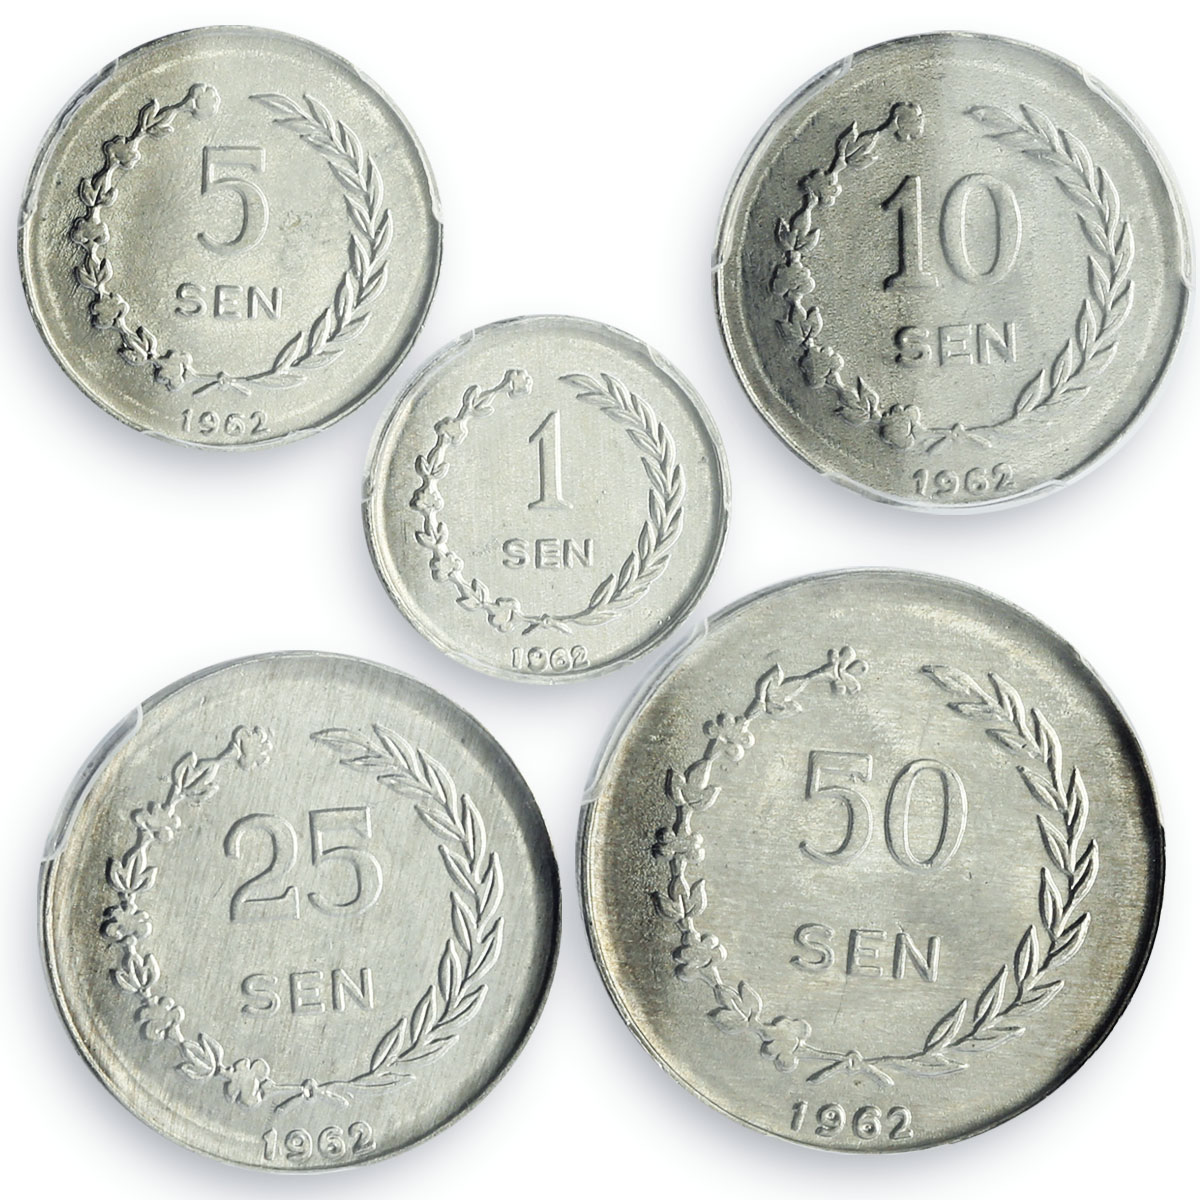 Indonesia Riau Archipelago set of 5 coins Sukarno MS63 - MS64 PCGS Al coins 1962